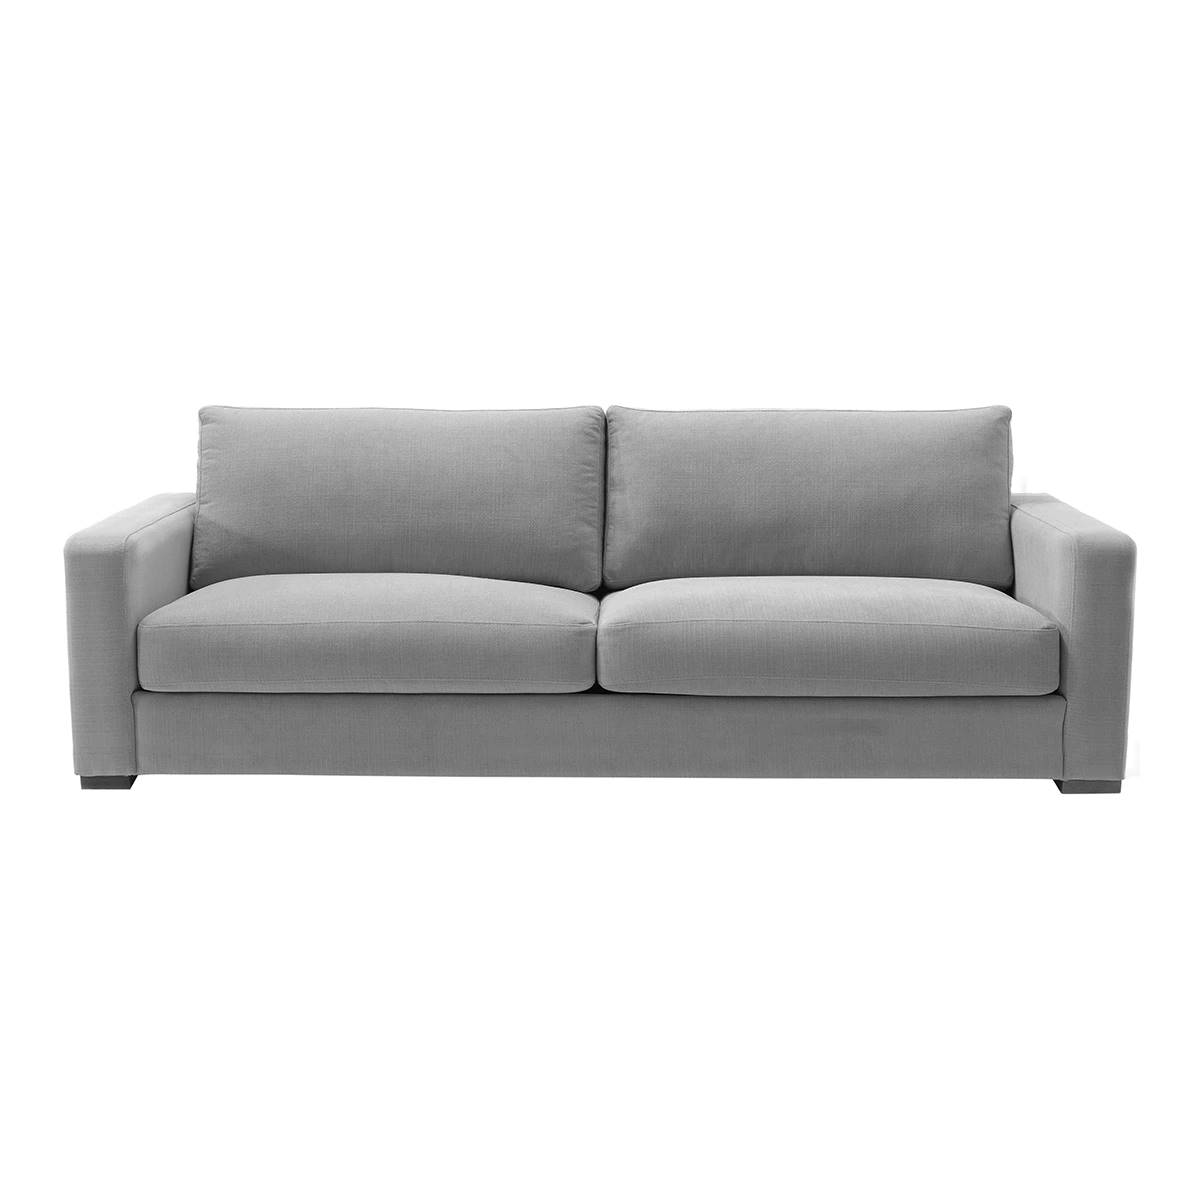 sofa gris estilo el mueble eci